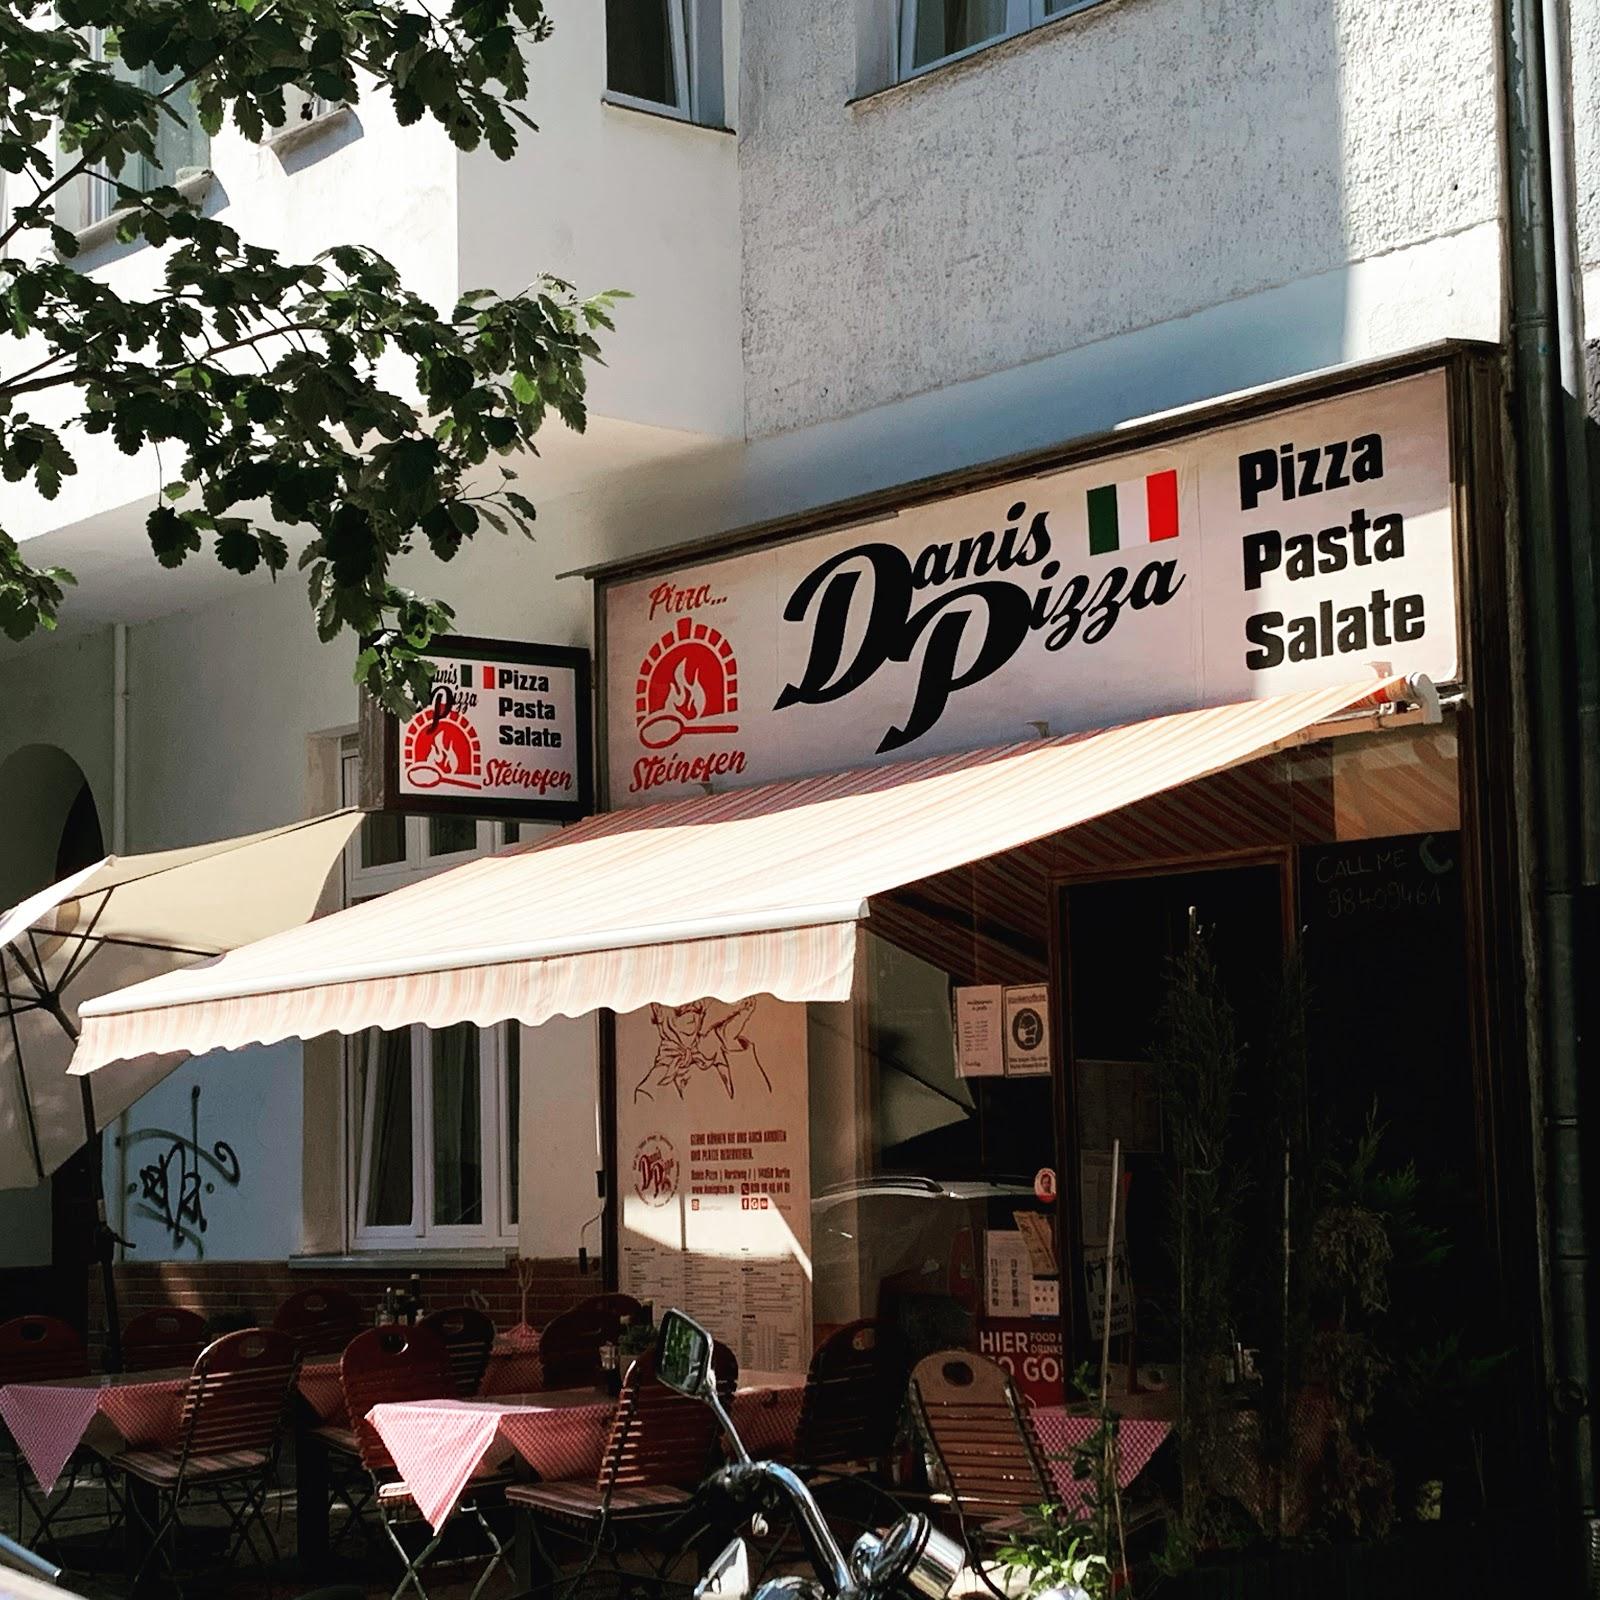 Restaurant "Danis pizza" in Berlin